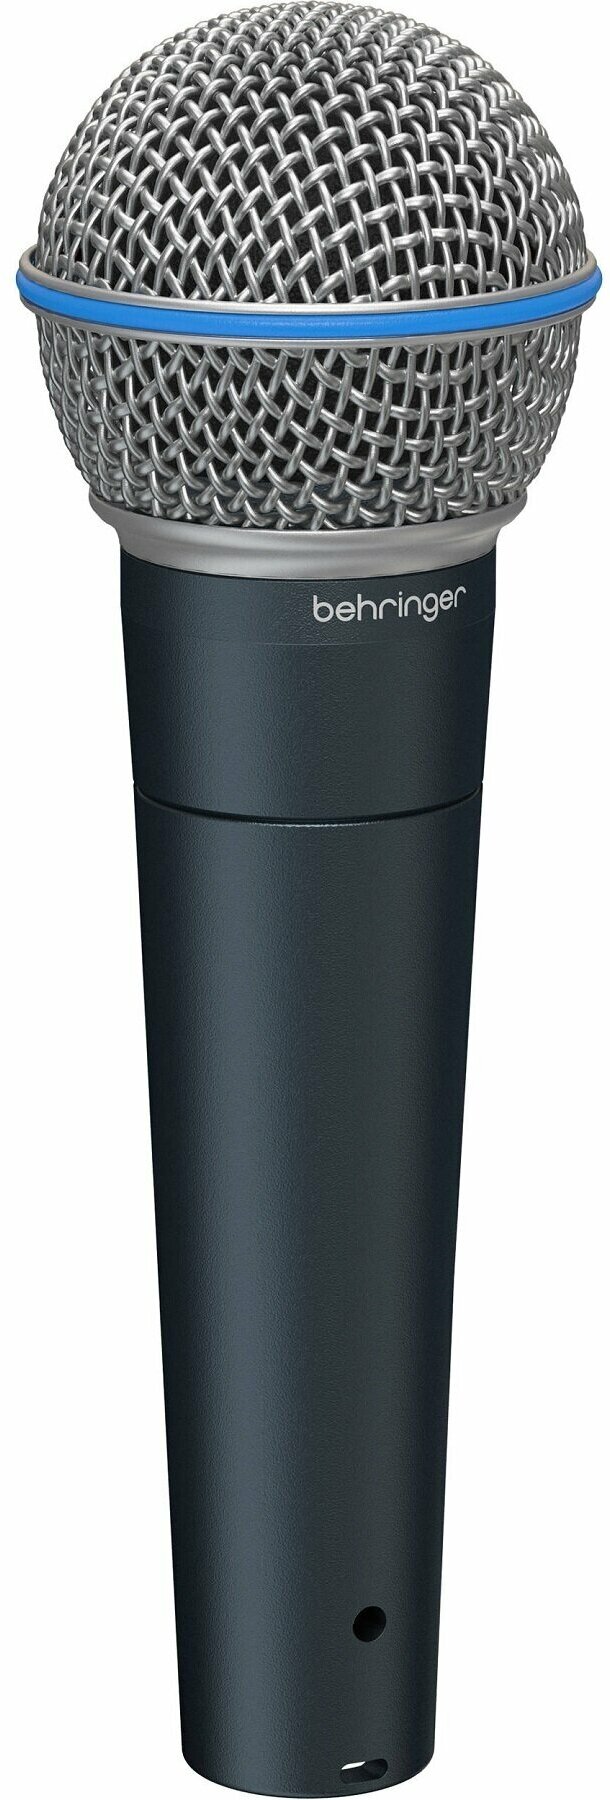 Микрофон Behringer BA 85A